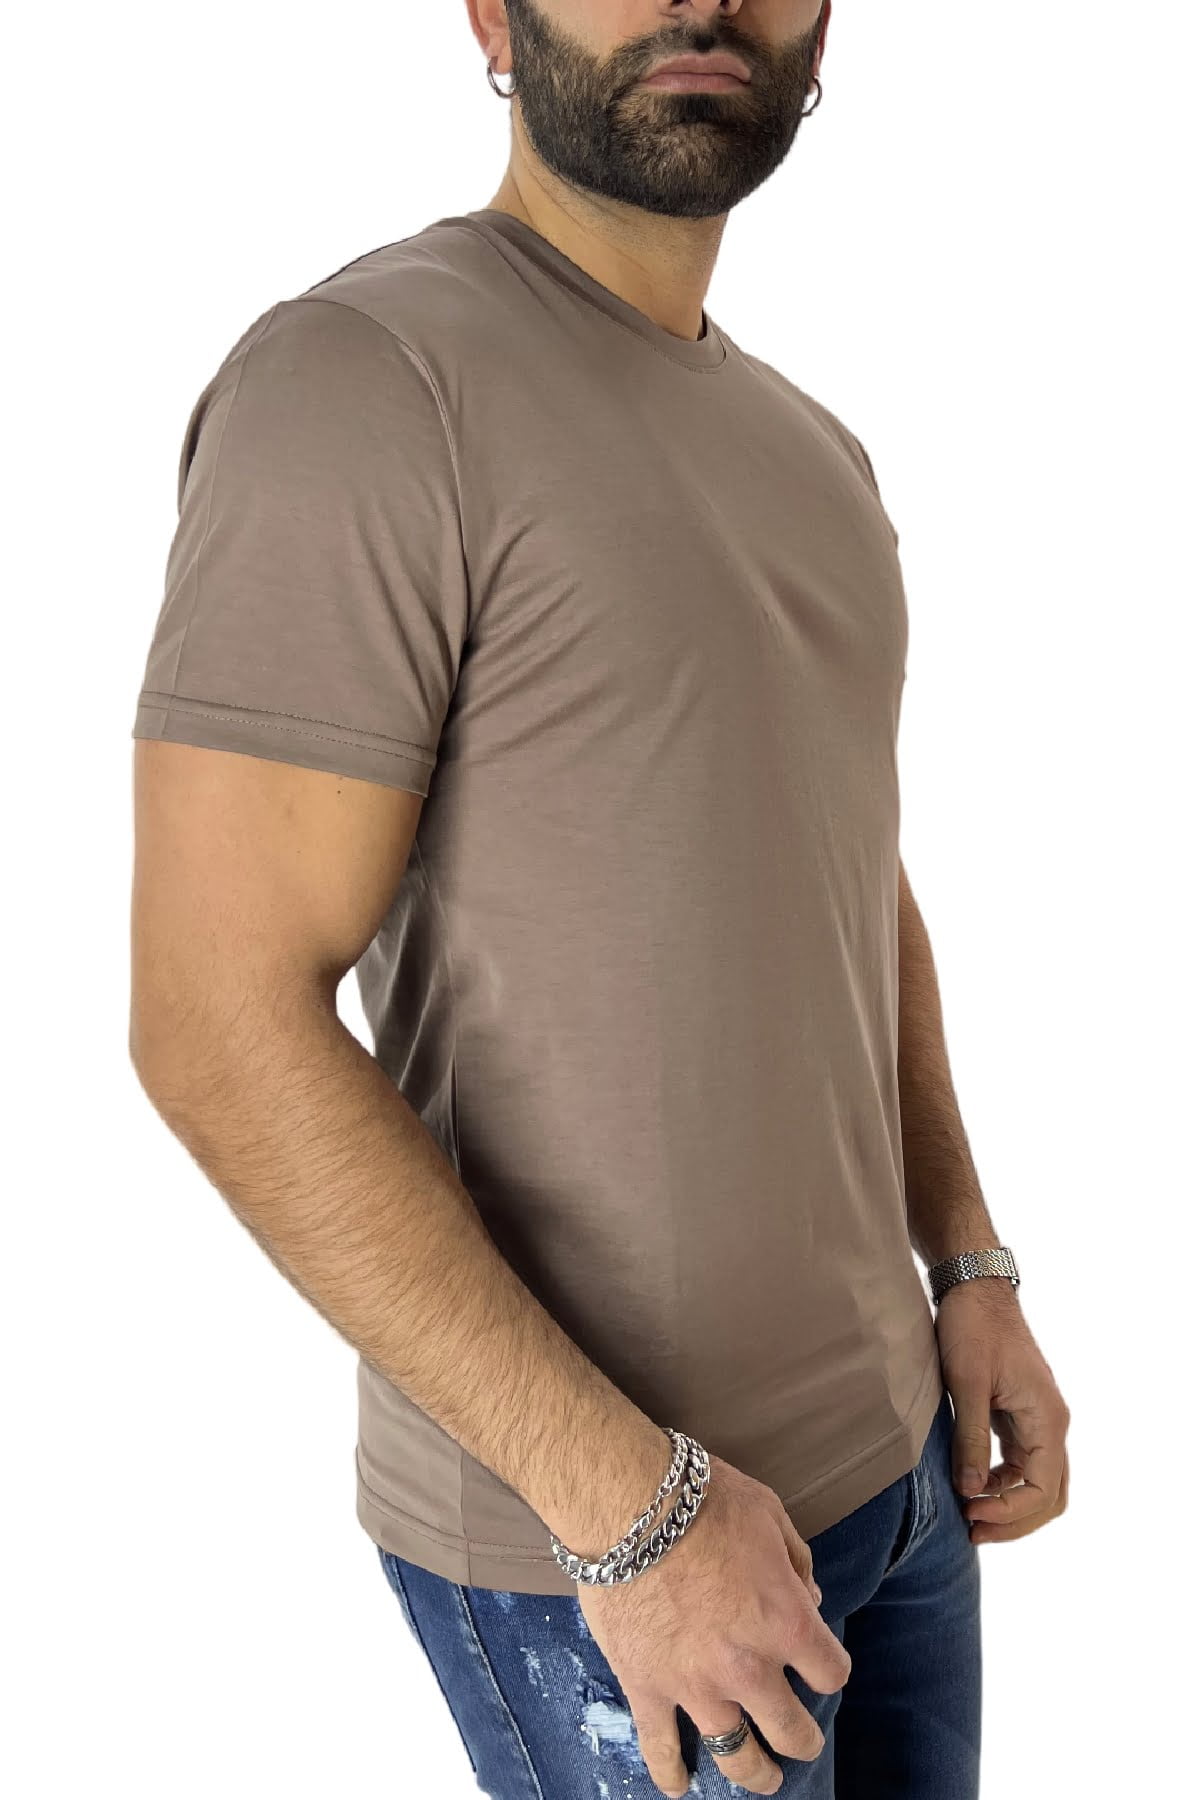 T-shirt da uomo Fango in cotone 100% Filo di scozia slim fit tinta unita Made In Italy